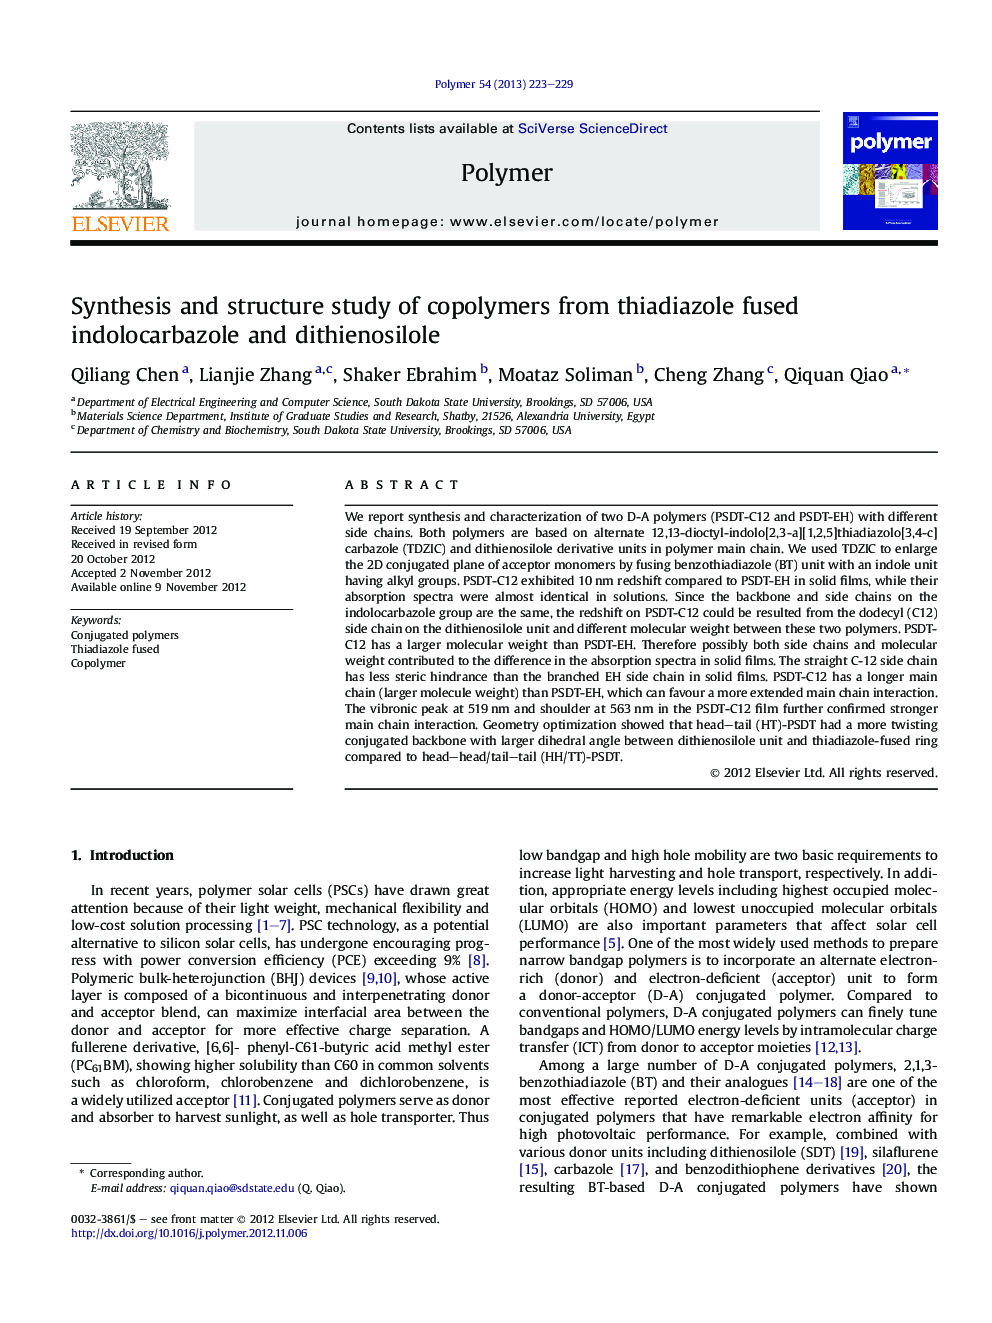 سنتز و بررسی ساختار کوپلیمرهای سدیمینول و اندولوکوارازول 